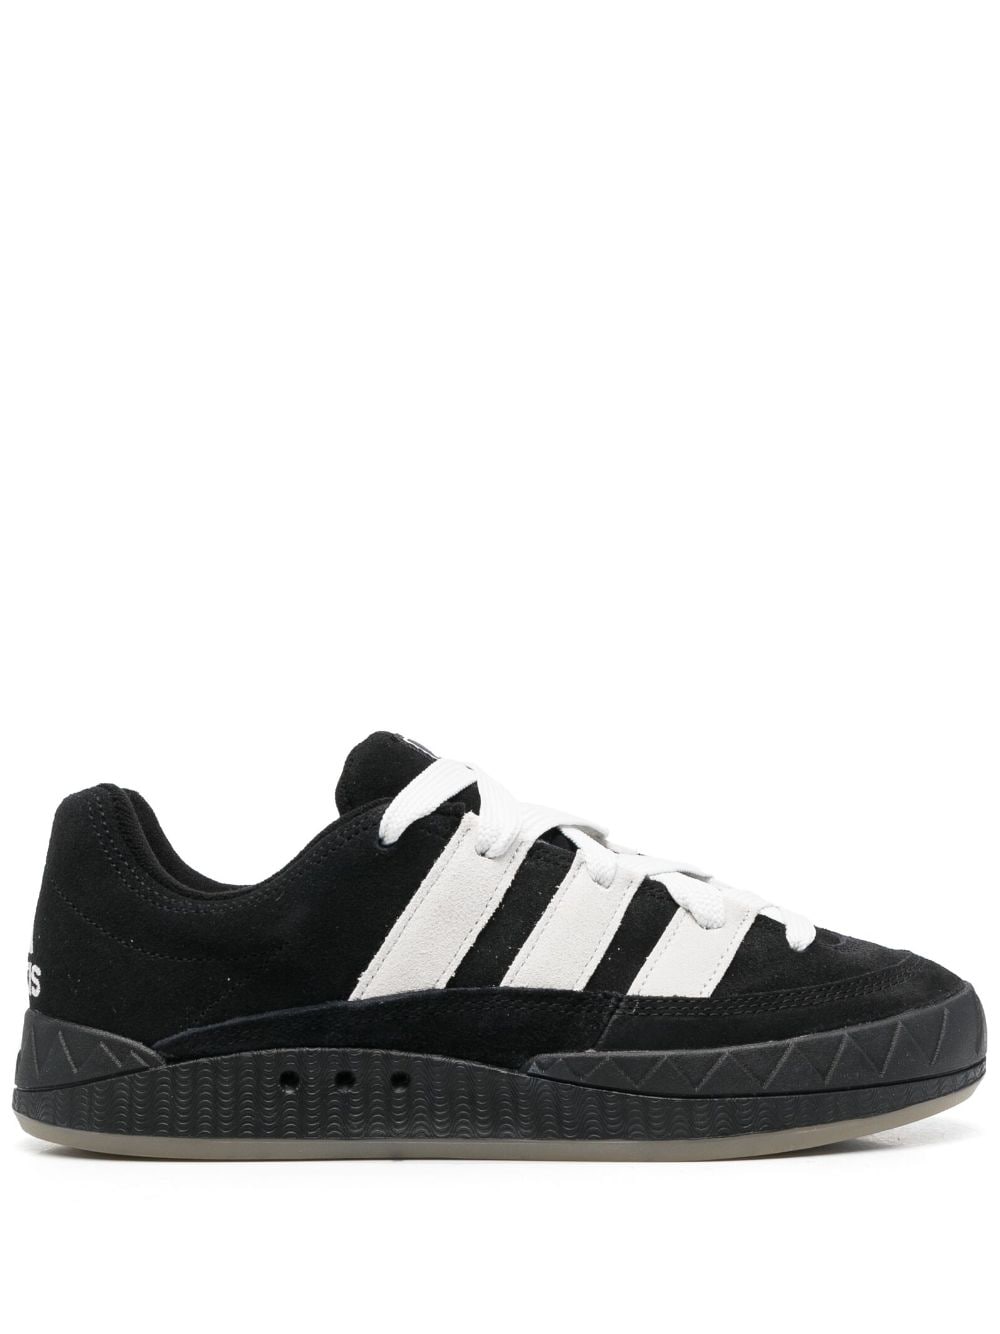 Adidas Originals Adimatic Sneakers In Black